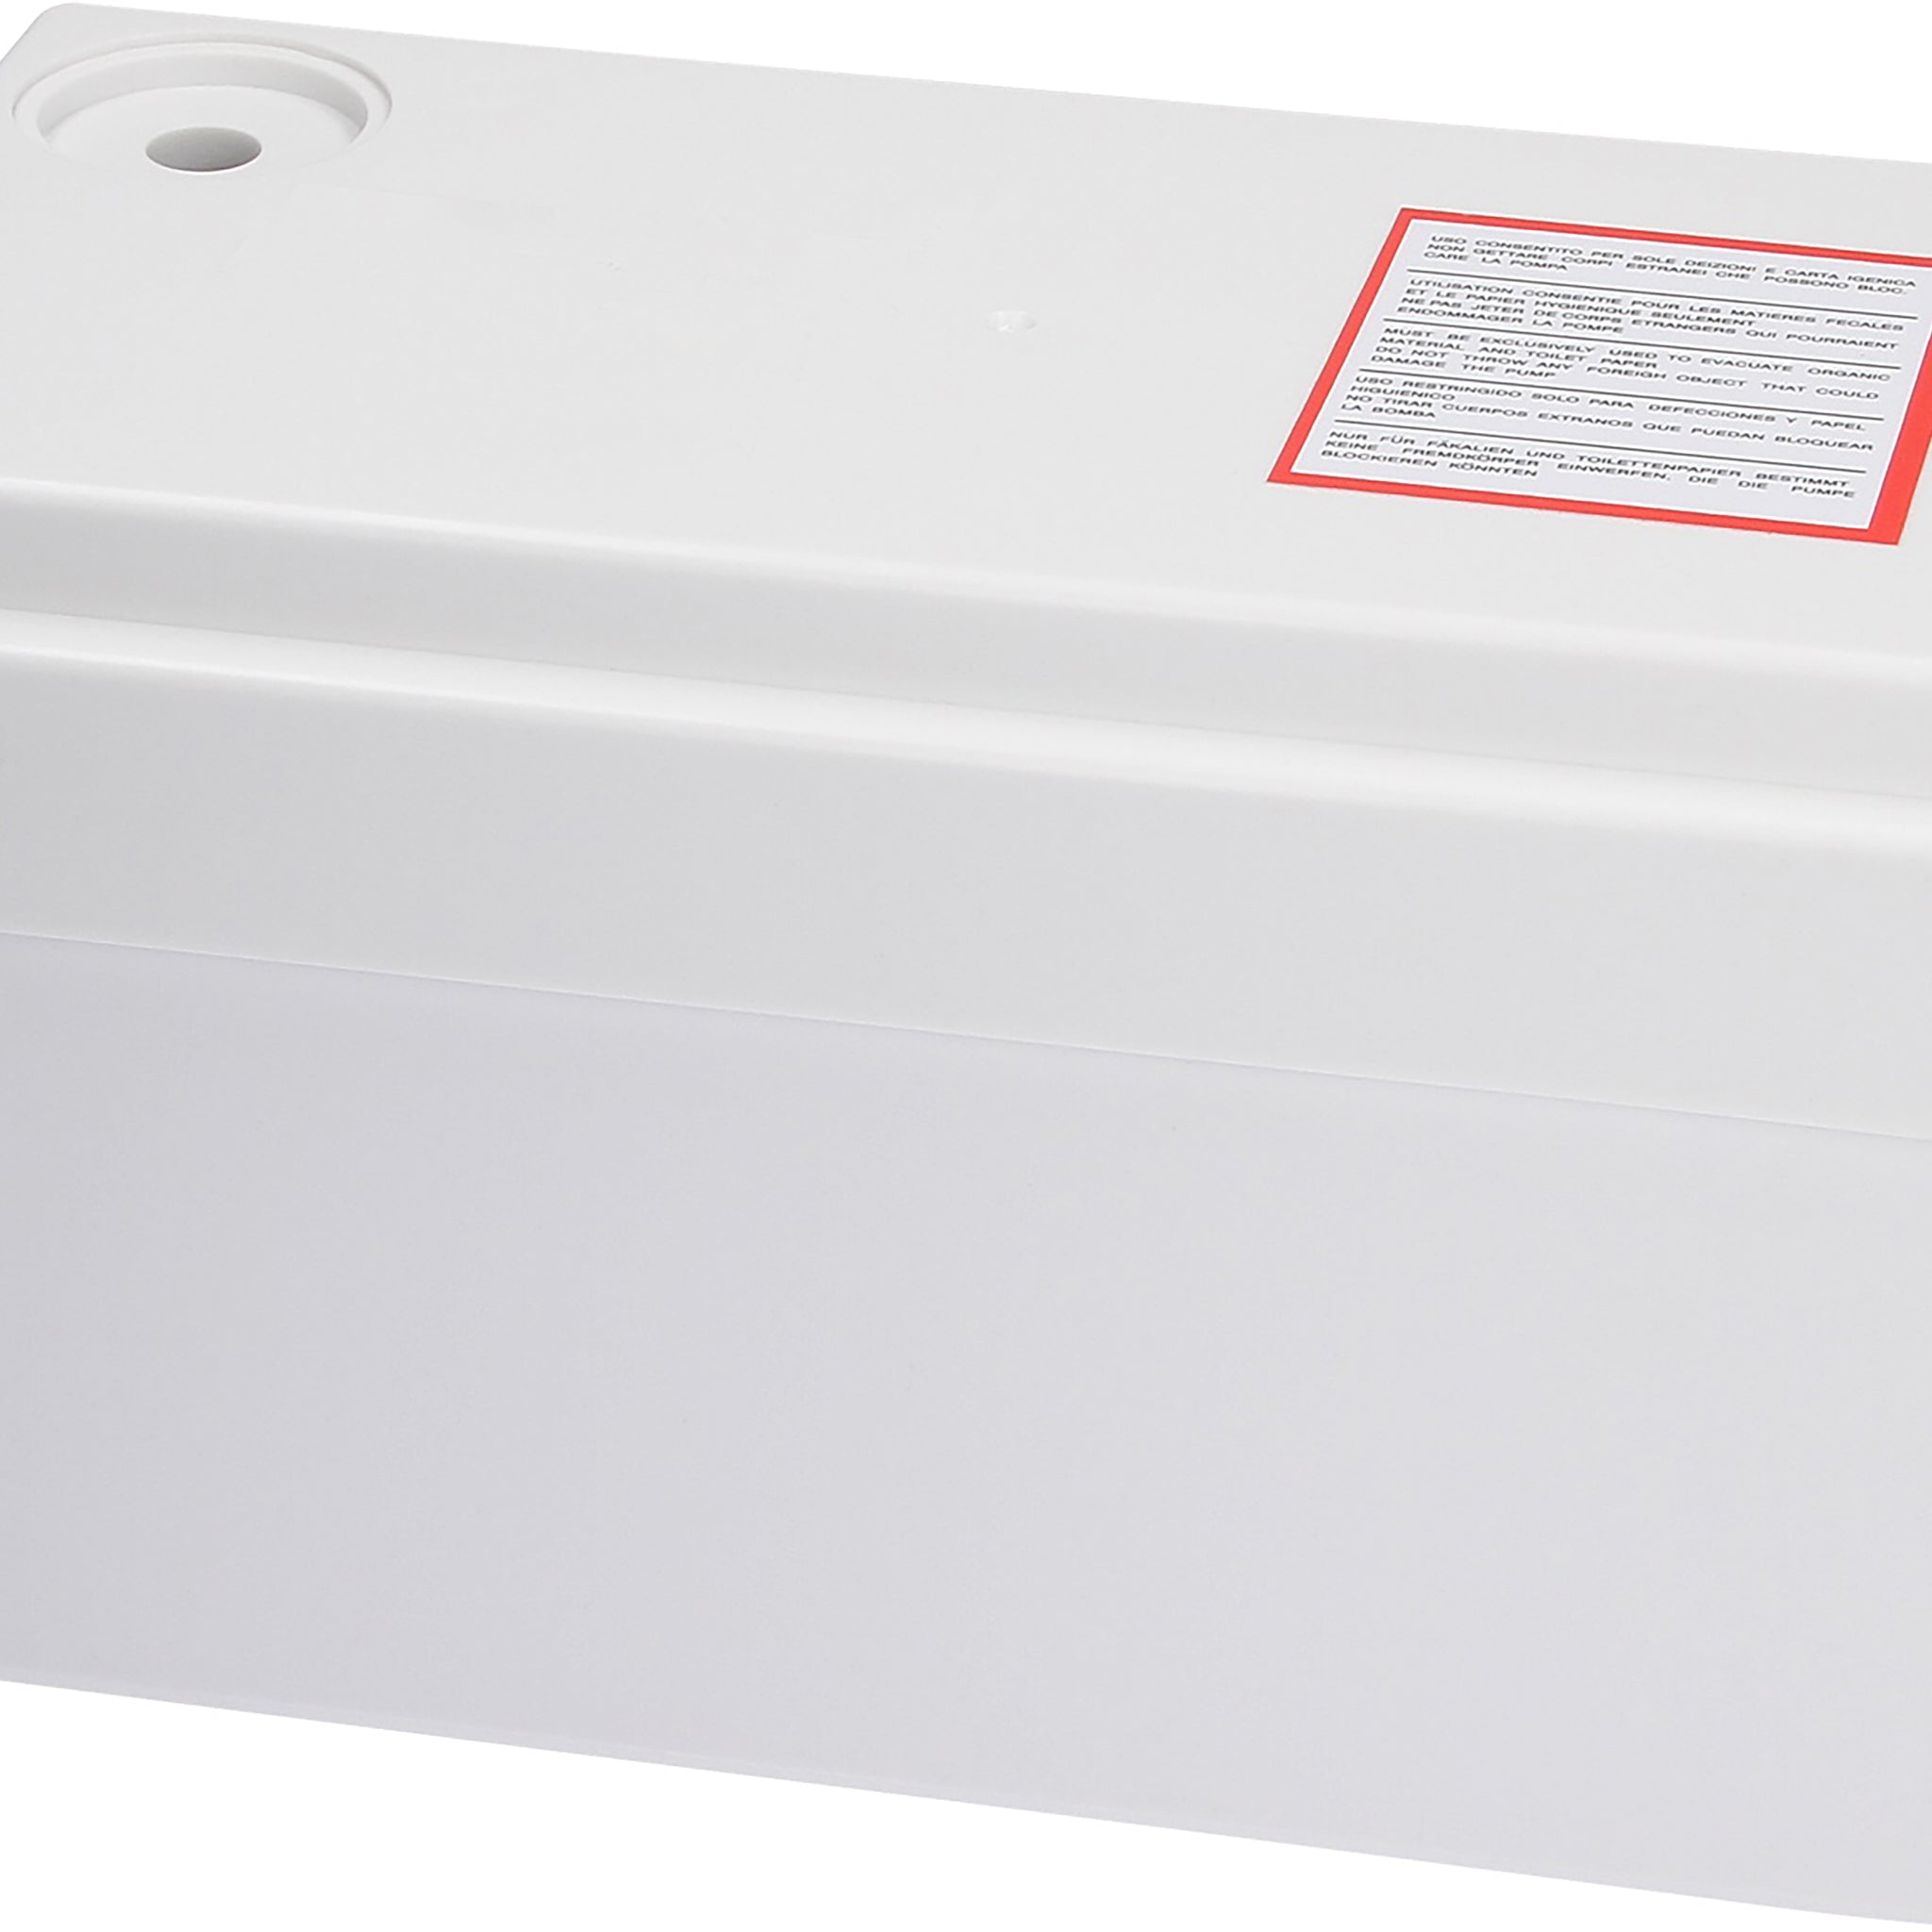 Macerator Pump Sanitary P250 ® Waste Water Pump IP54 Rating for Shower, Sink, Bath Tub etc 250 Watt 2 in 1